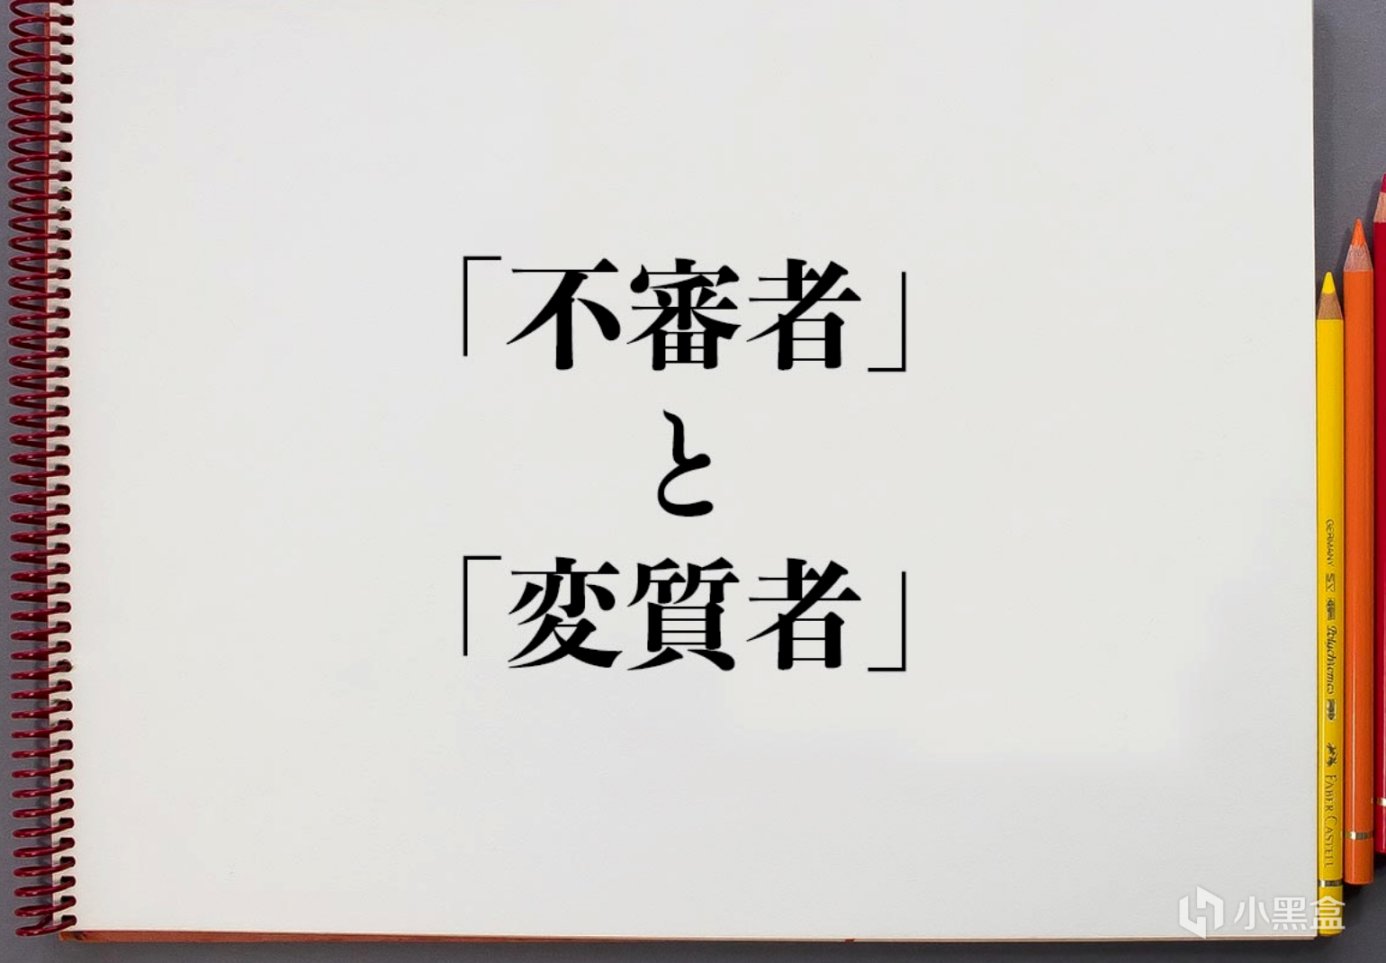 【沙雕日常】“你不對勁”用日文怎麼說？網友奇怪的問題該如何解答-第3張